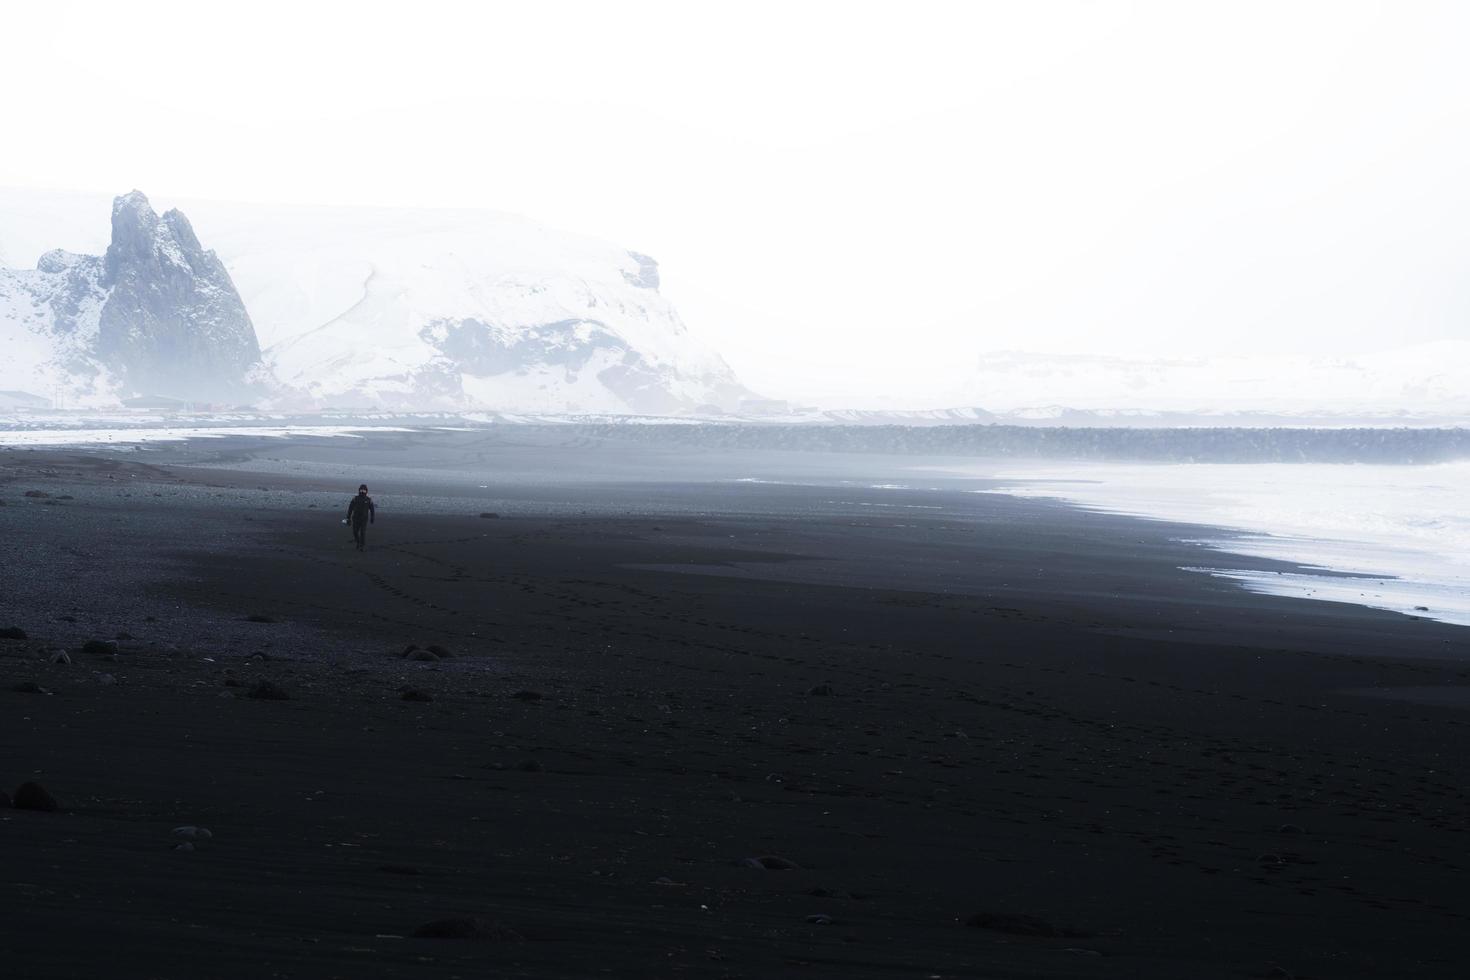 noir et blanc d & # 39; une personne marchant sur une plage photo